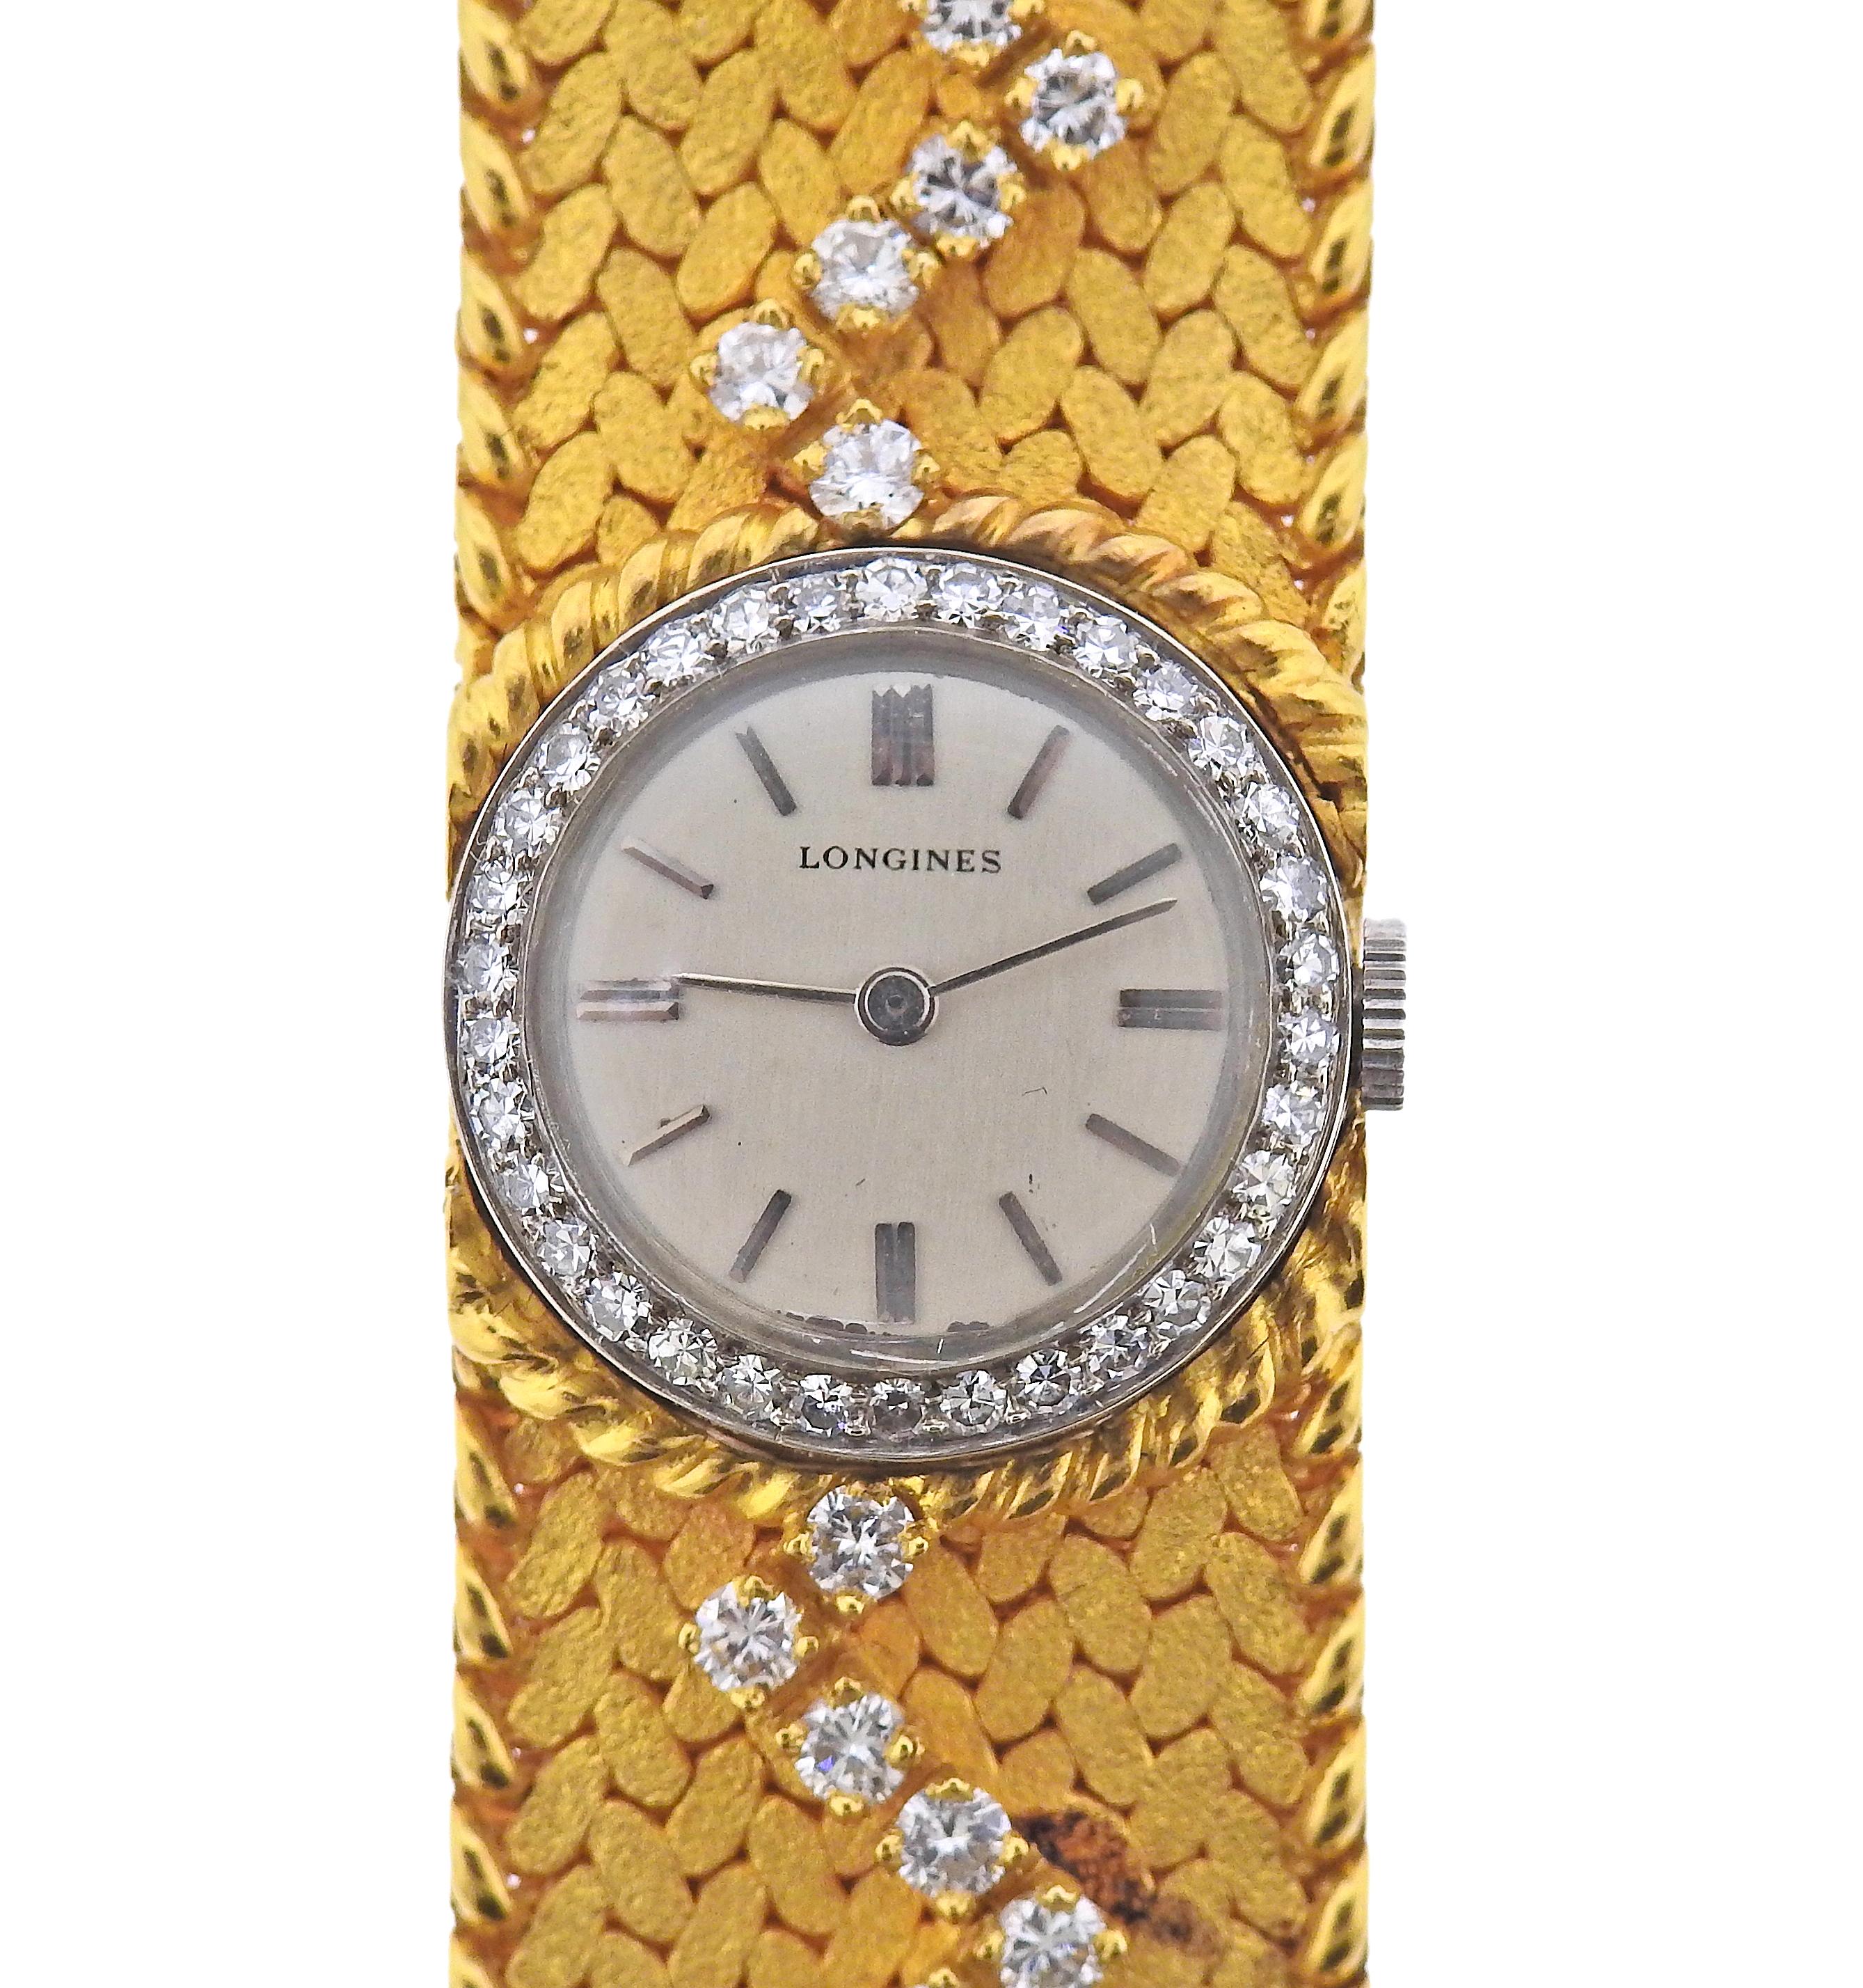 Bracelet en or 18k de Cartier, orné d'environ 3,65ctw en diamants, avec montre Longines à remontage manuel. Le bracelet mesure 7 2/8